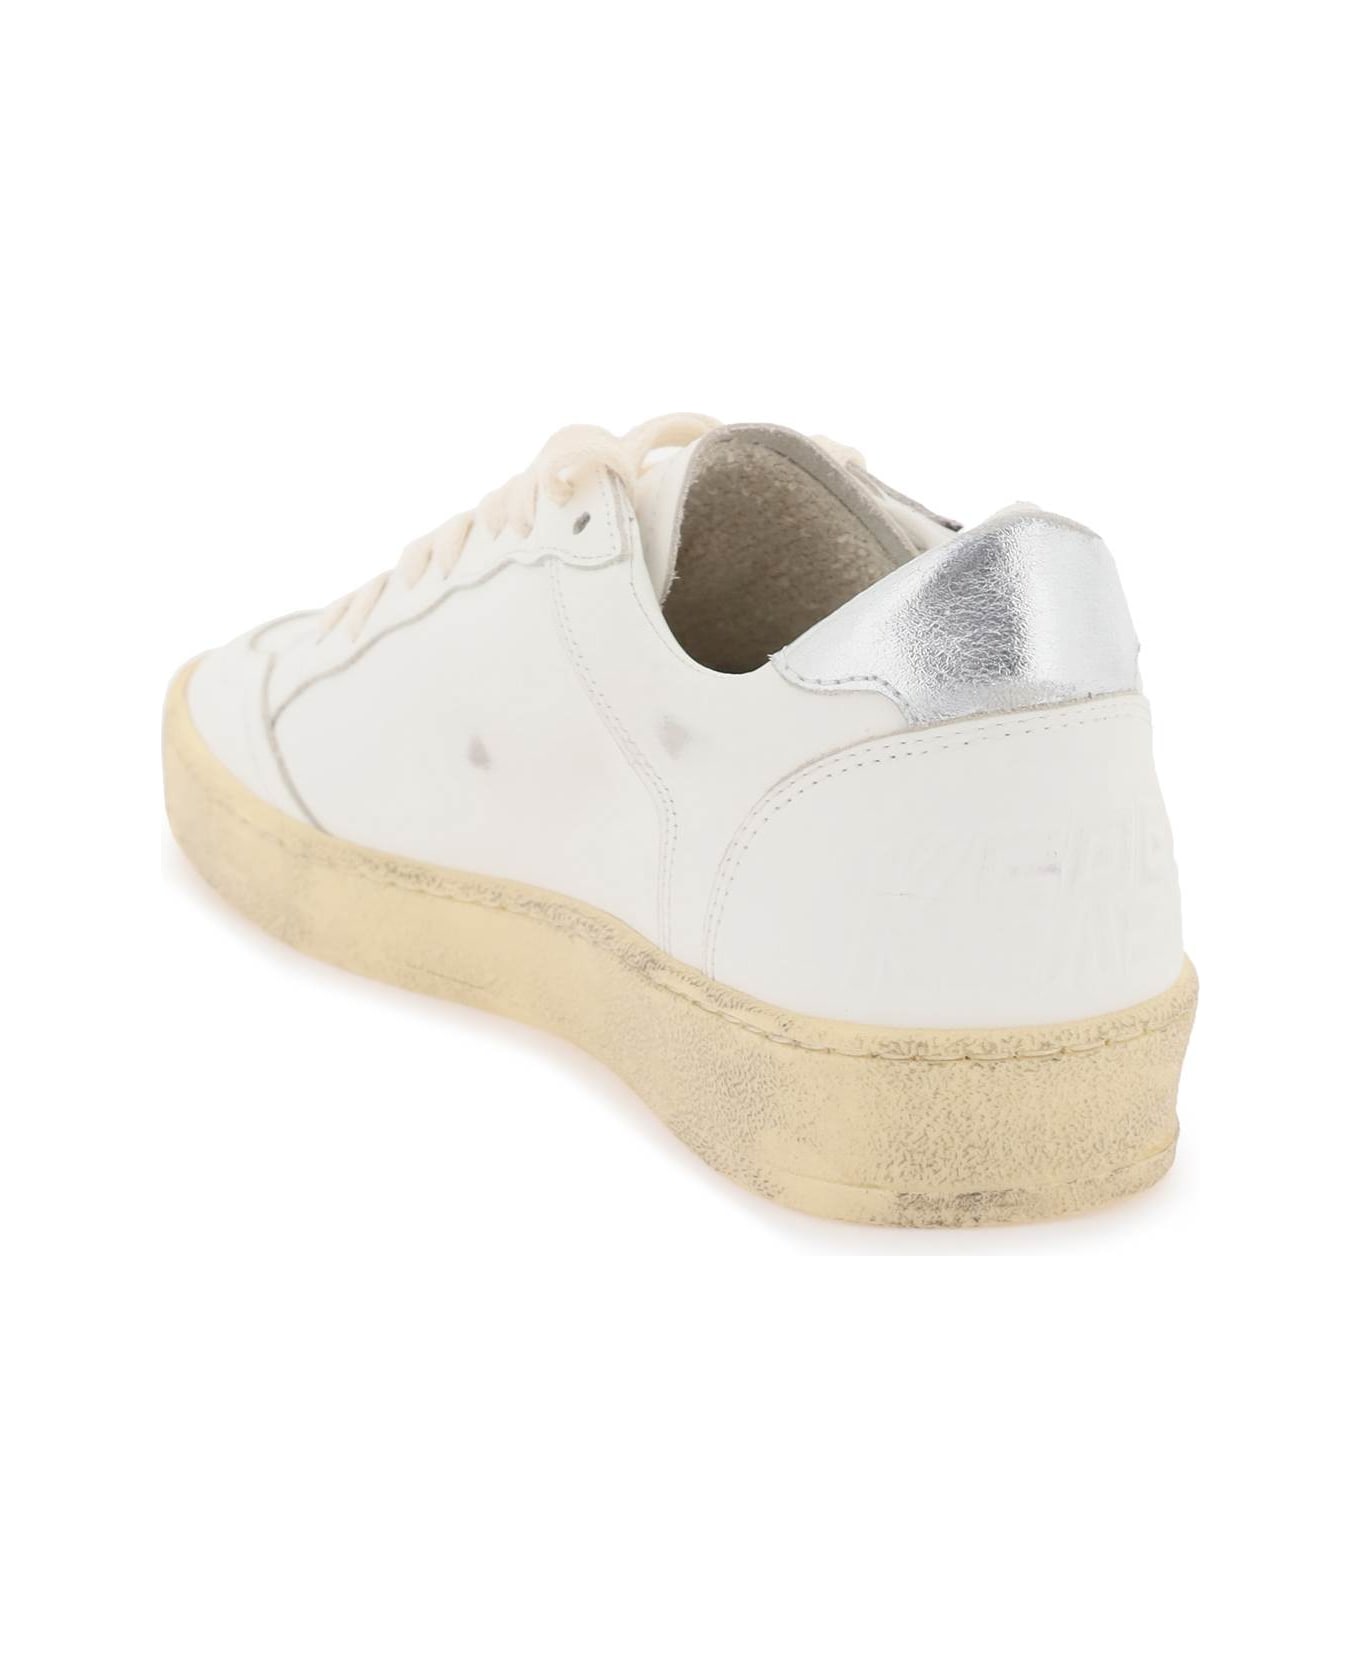 Golden Goose Ball Star Sneakers - WHITE ICE SILVER (White) スニーカー